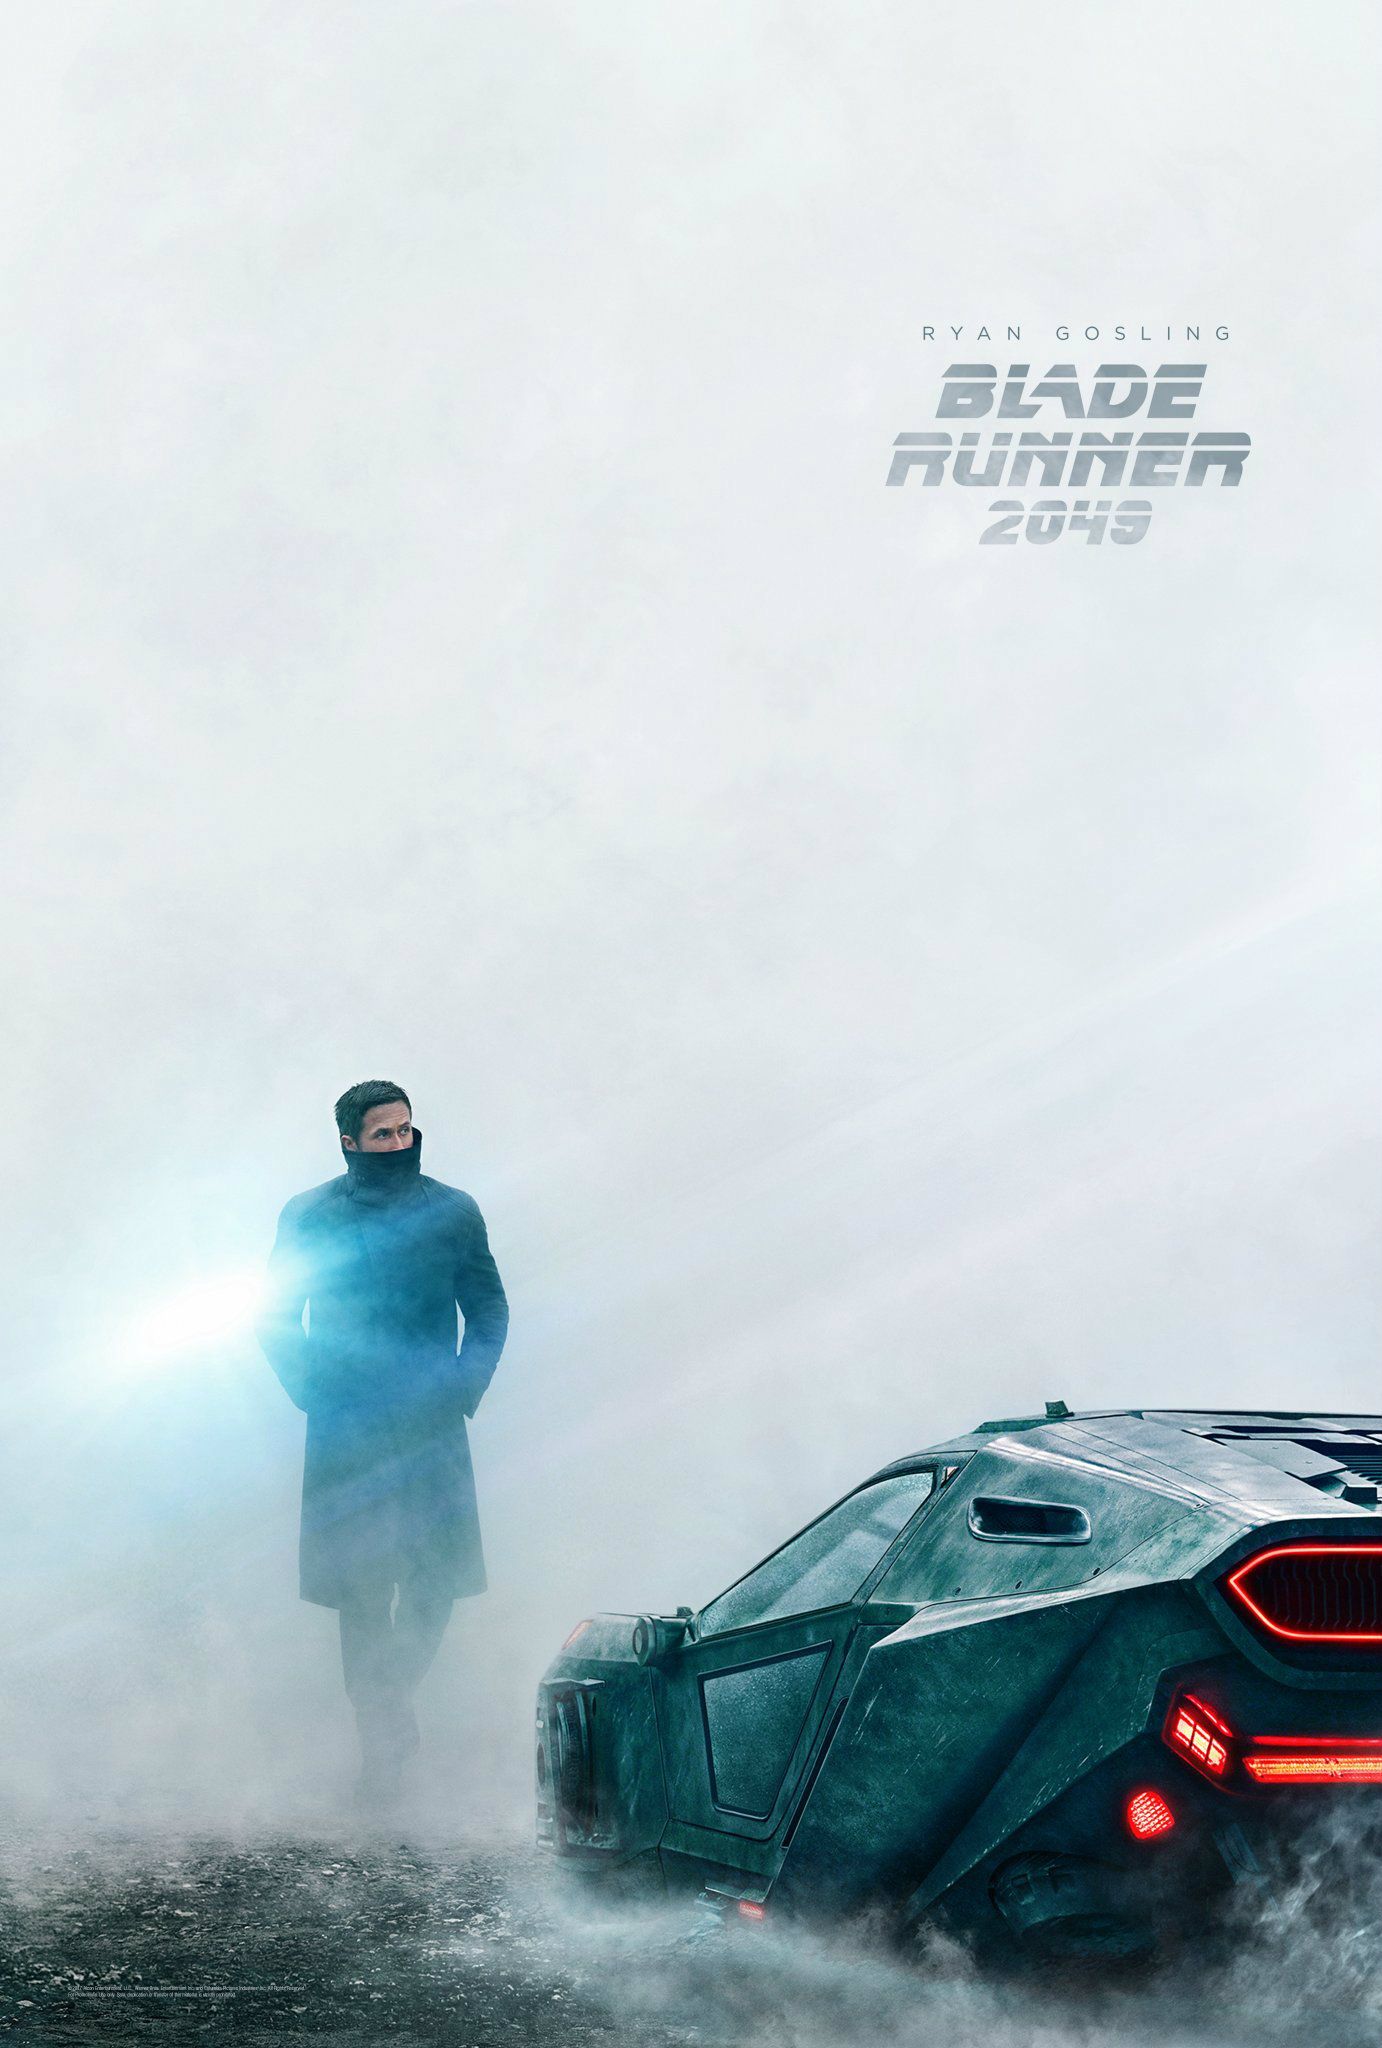 Blade Runner 2049 Images Highlight Ryan Gosling & Harrison Ford